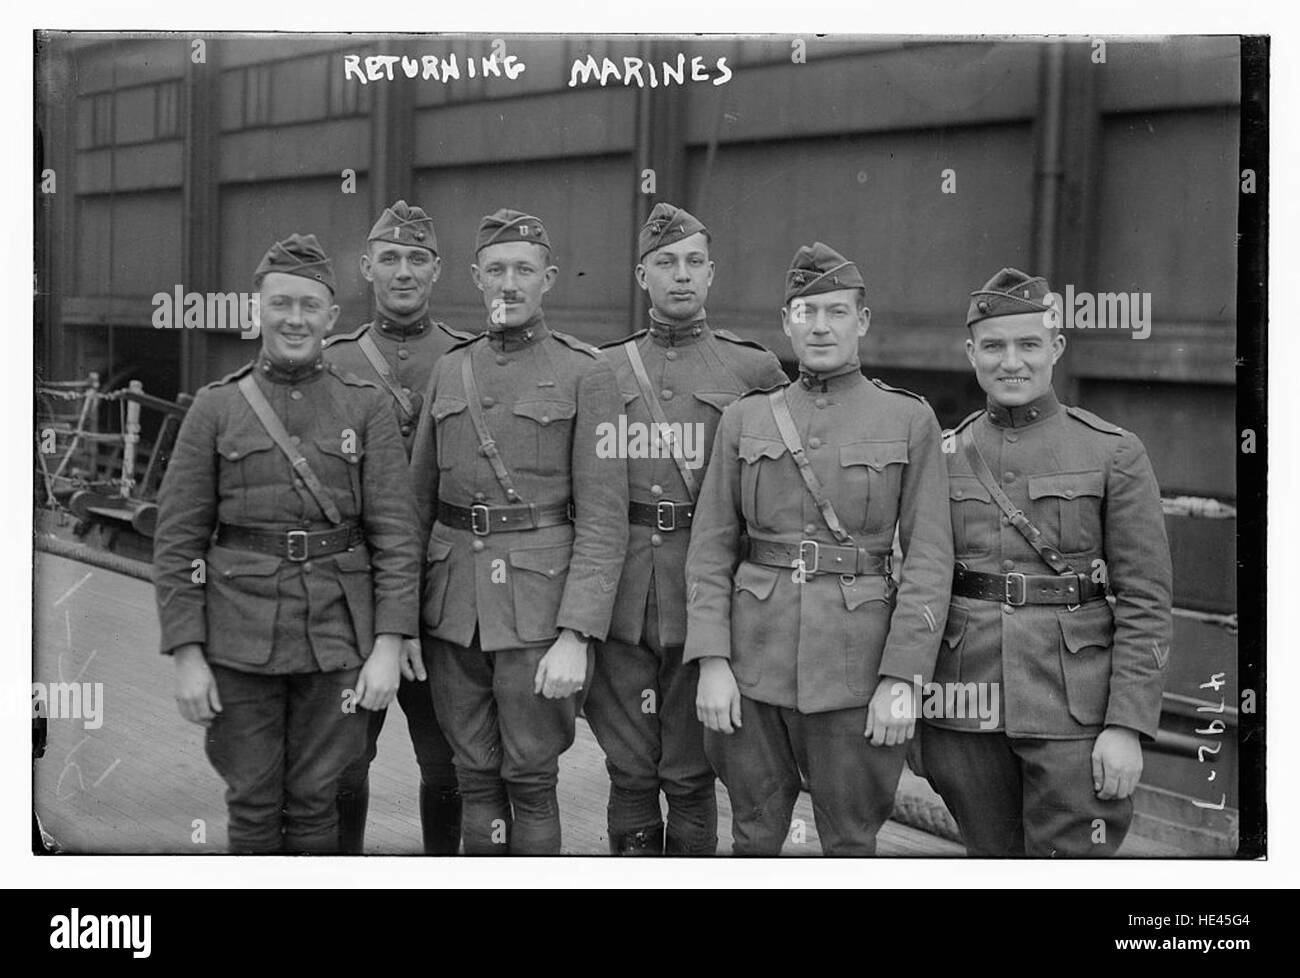 Returning marines Stock Photo